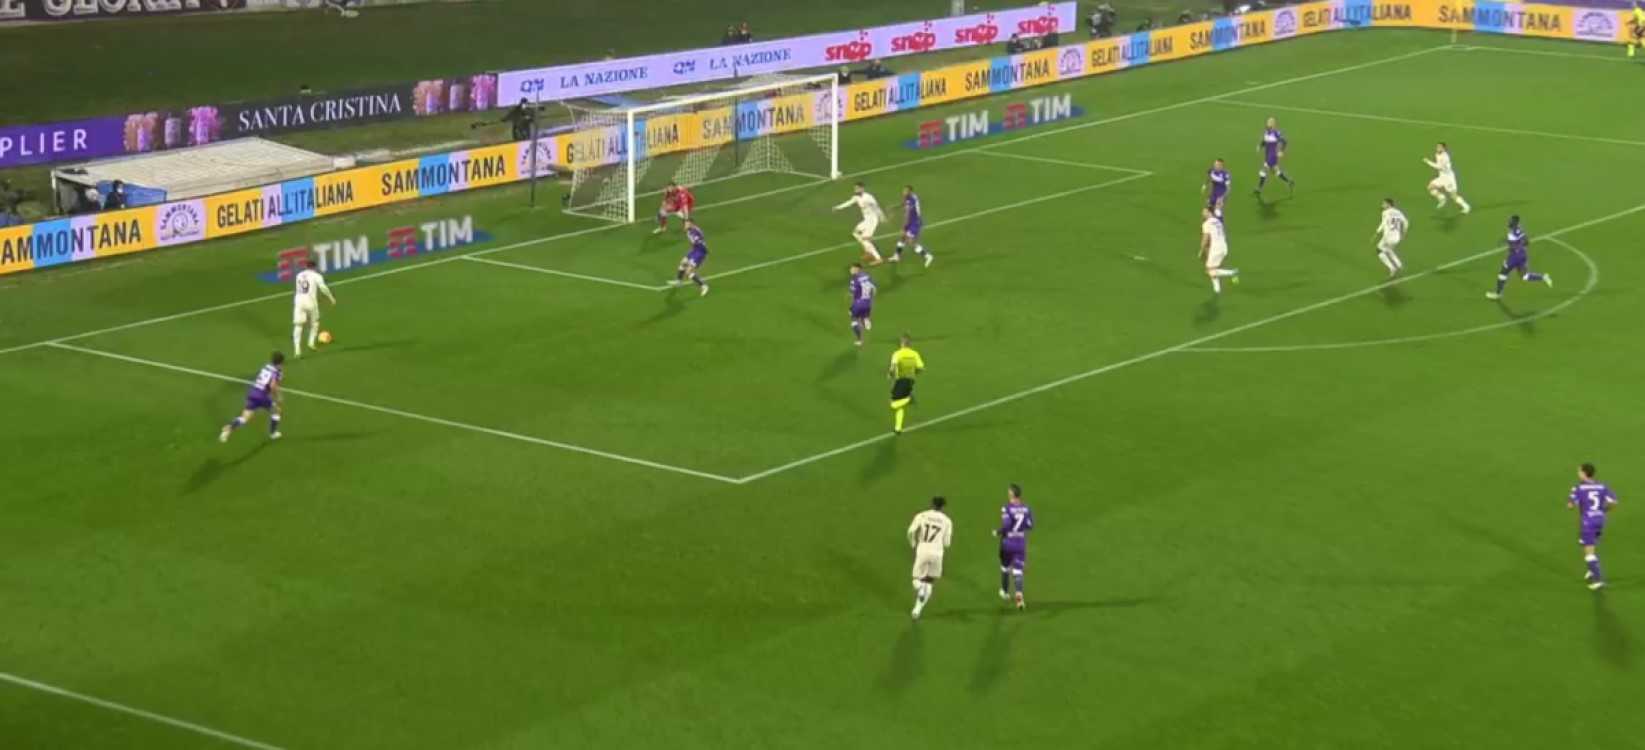 Fiorentina-Milan (4-3): analisi tattica e considerazioni